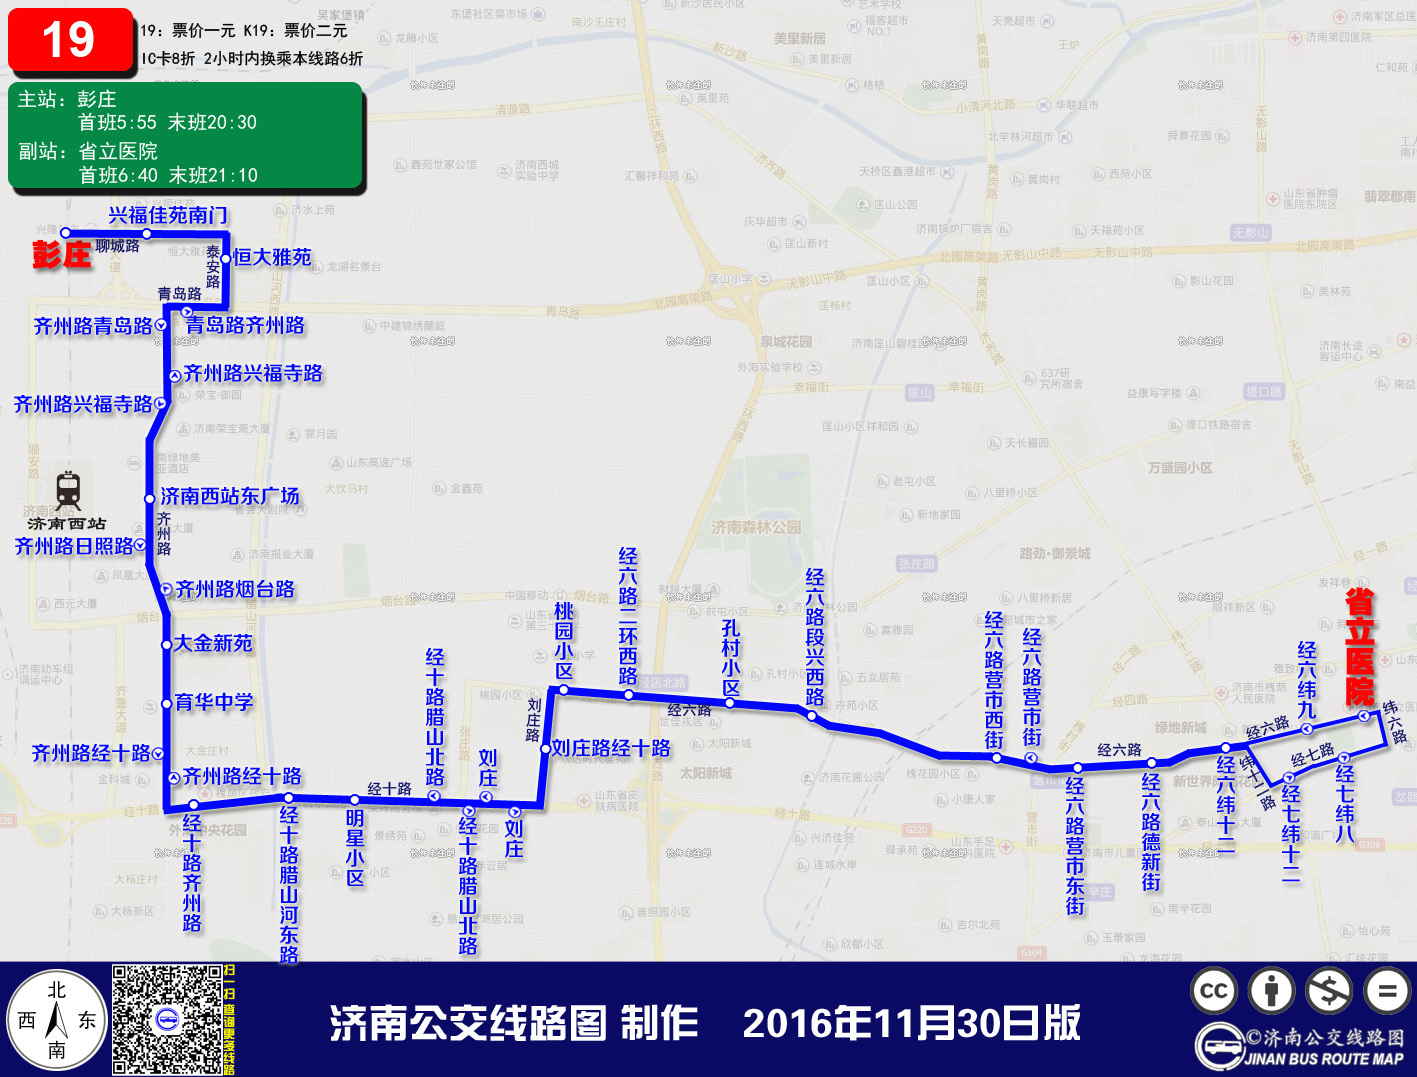 济南公交新增5条“B”字公交线路 可在BRT车站内免费换乘 - 济南频道